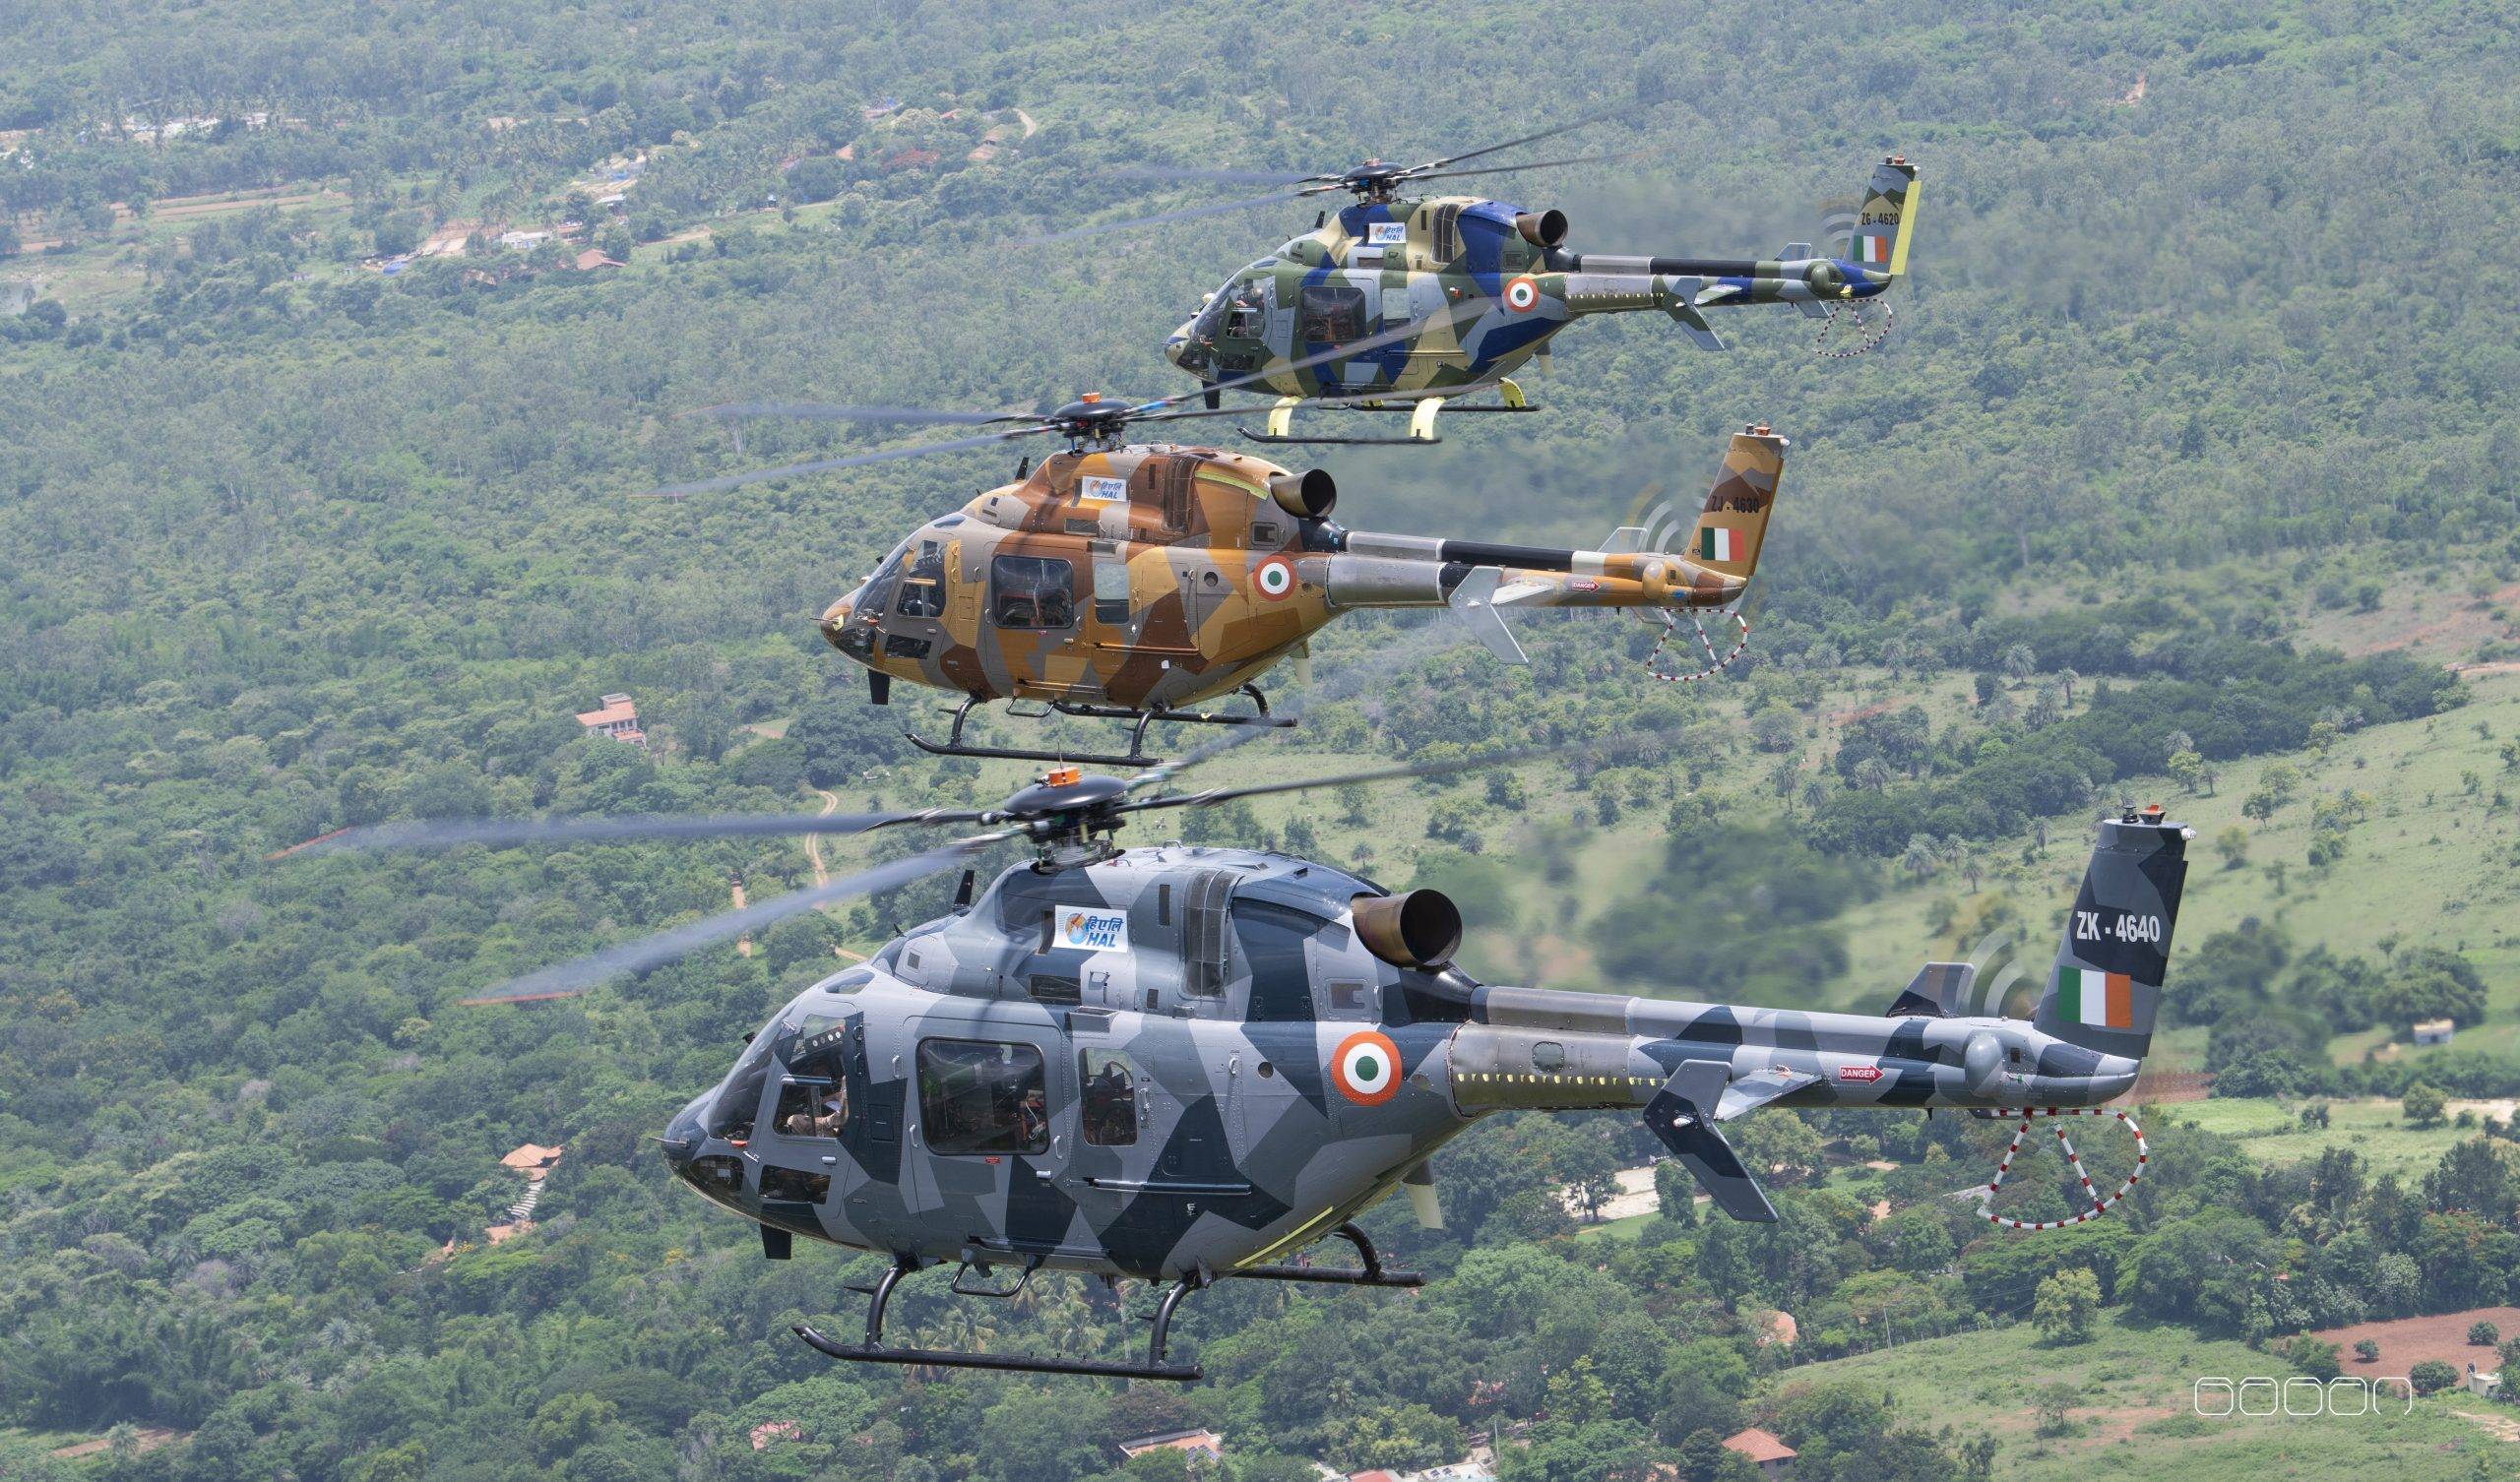 原创印度最新国产直升机,能在世界海拔最高前线作战,已订购186架